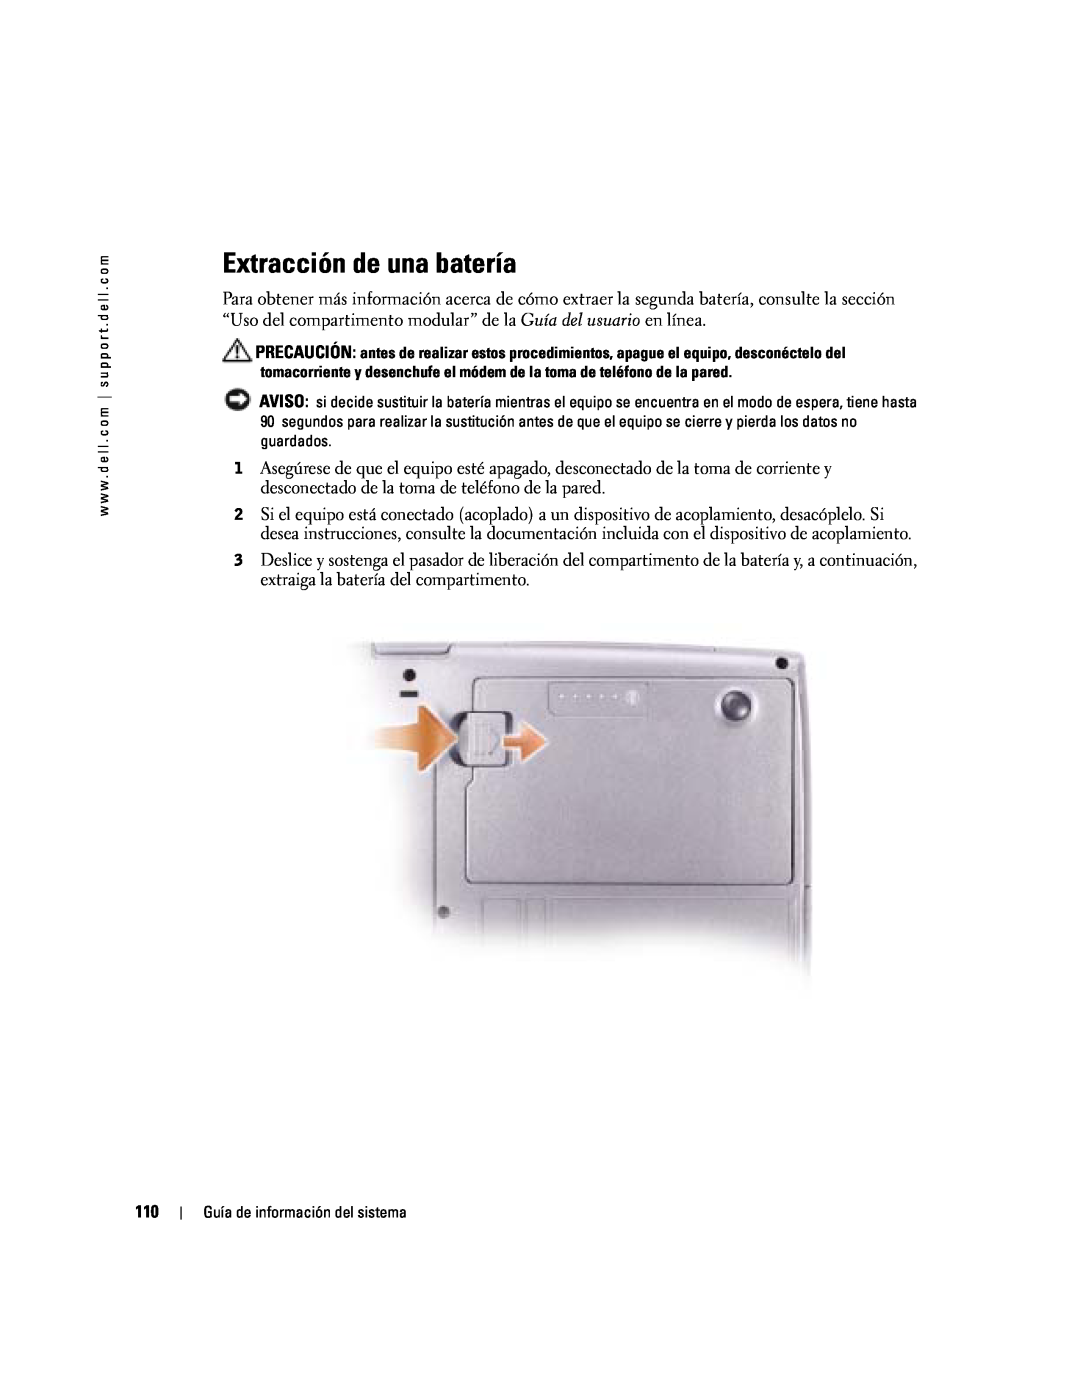 Dell D505 manual Extracción de una batería 